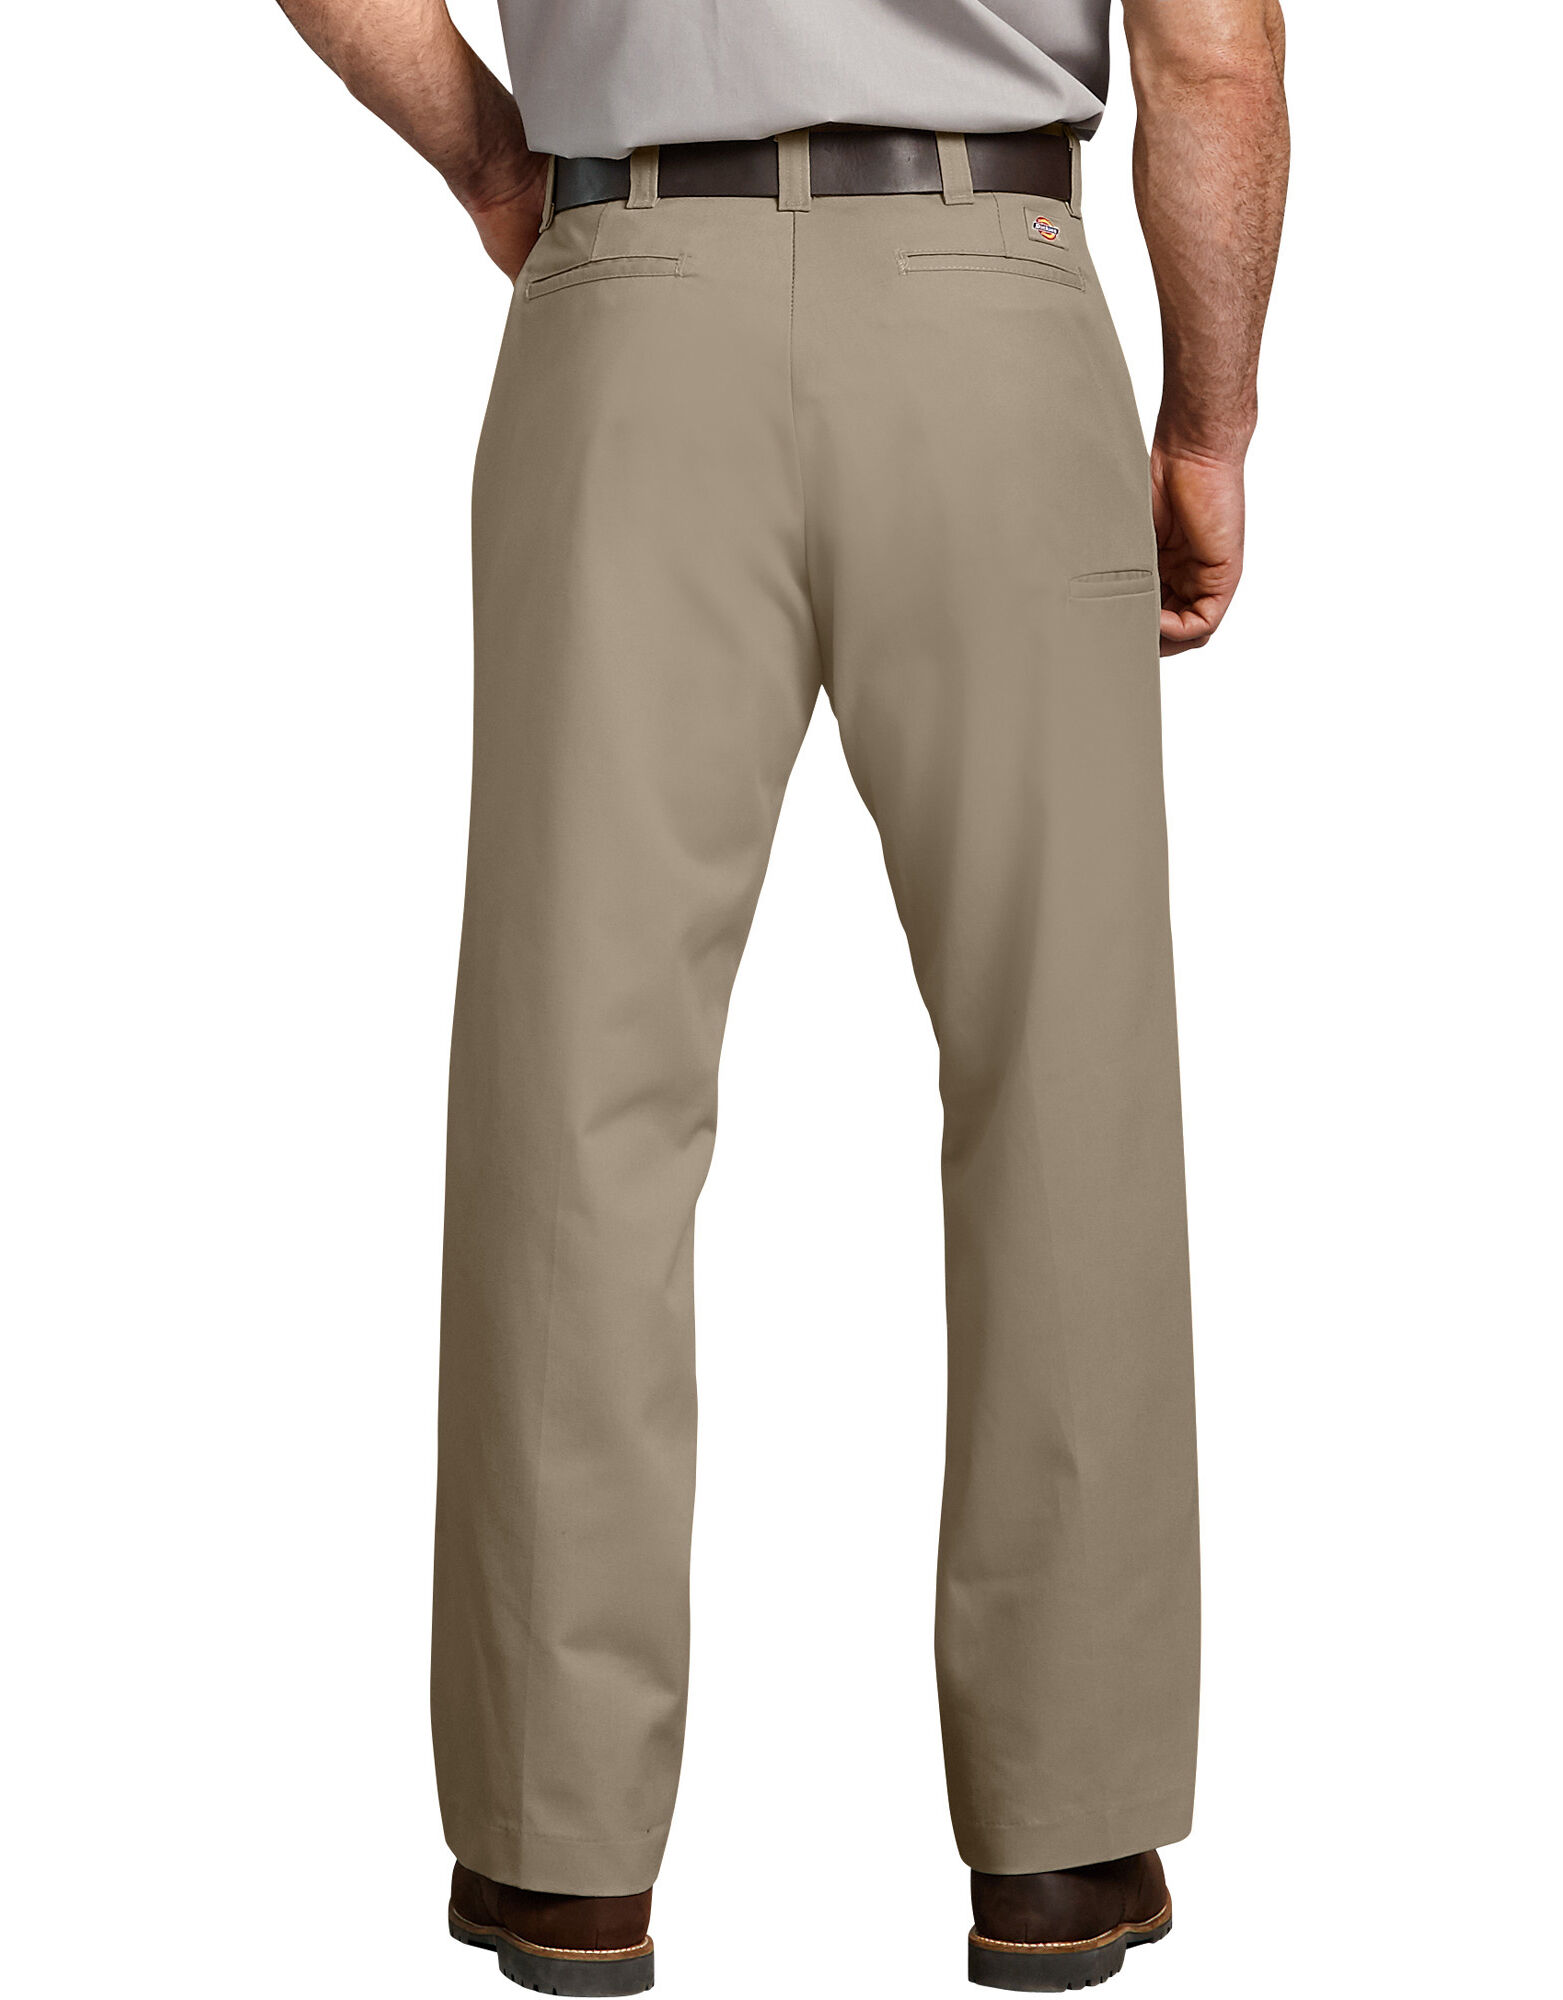 Industrial Multi-Use Pocket Pants | Men's Pants | Dickies